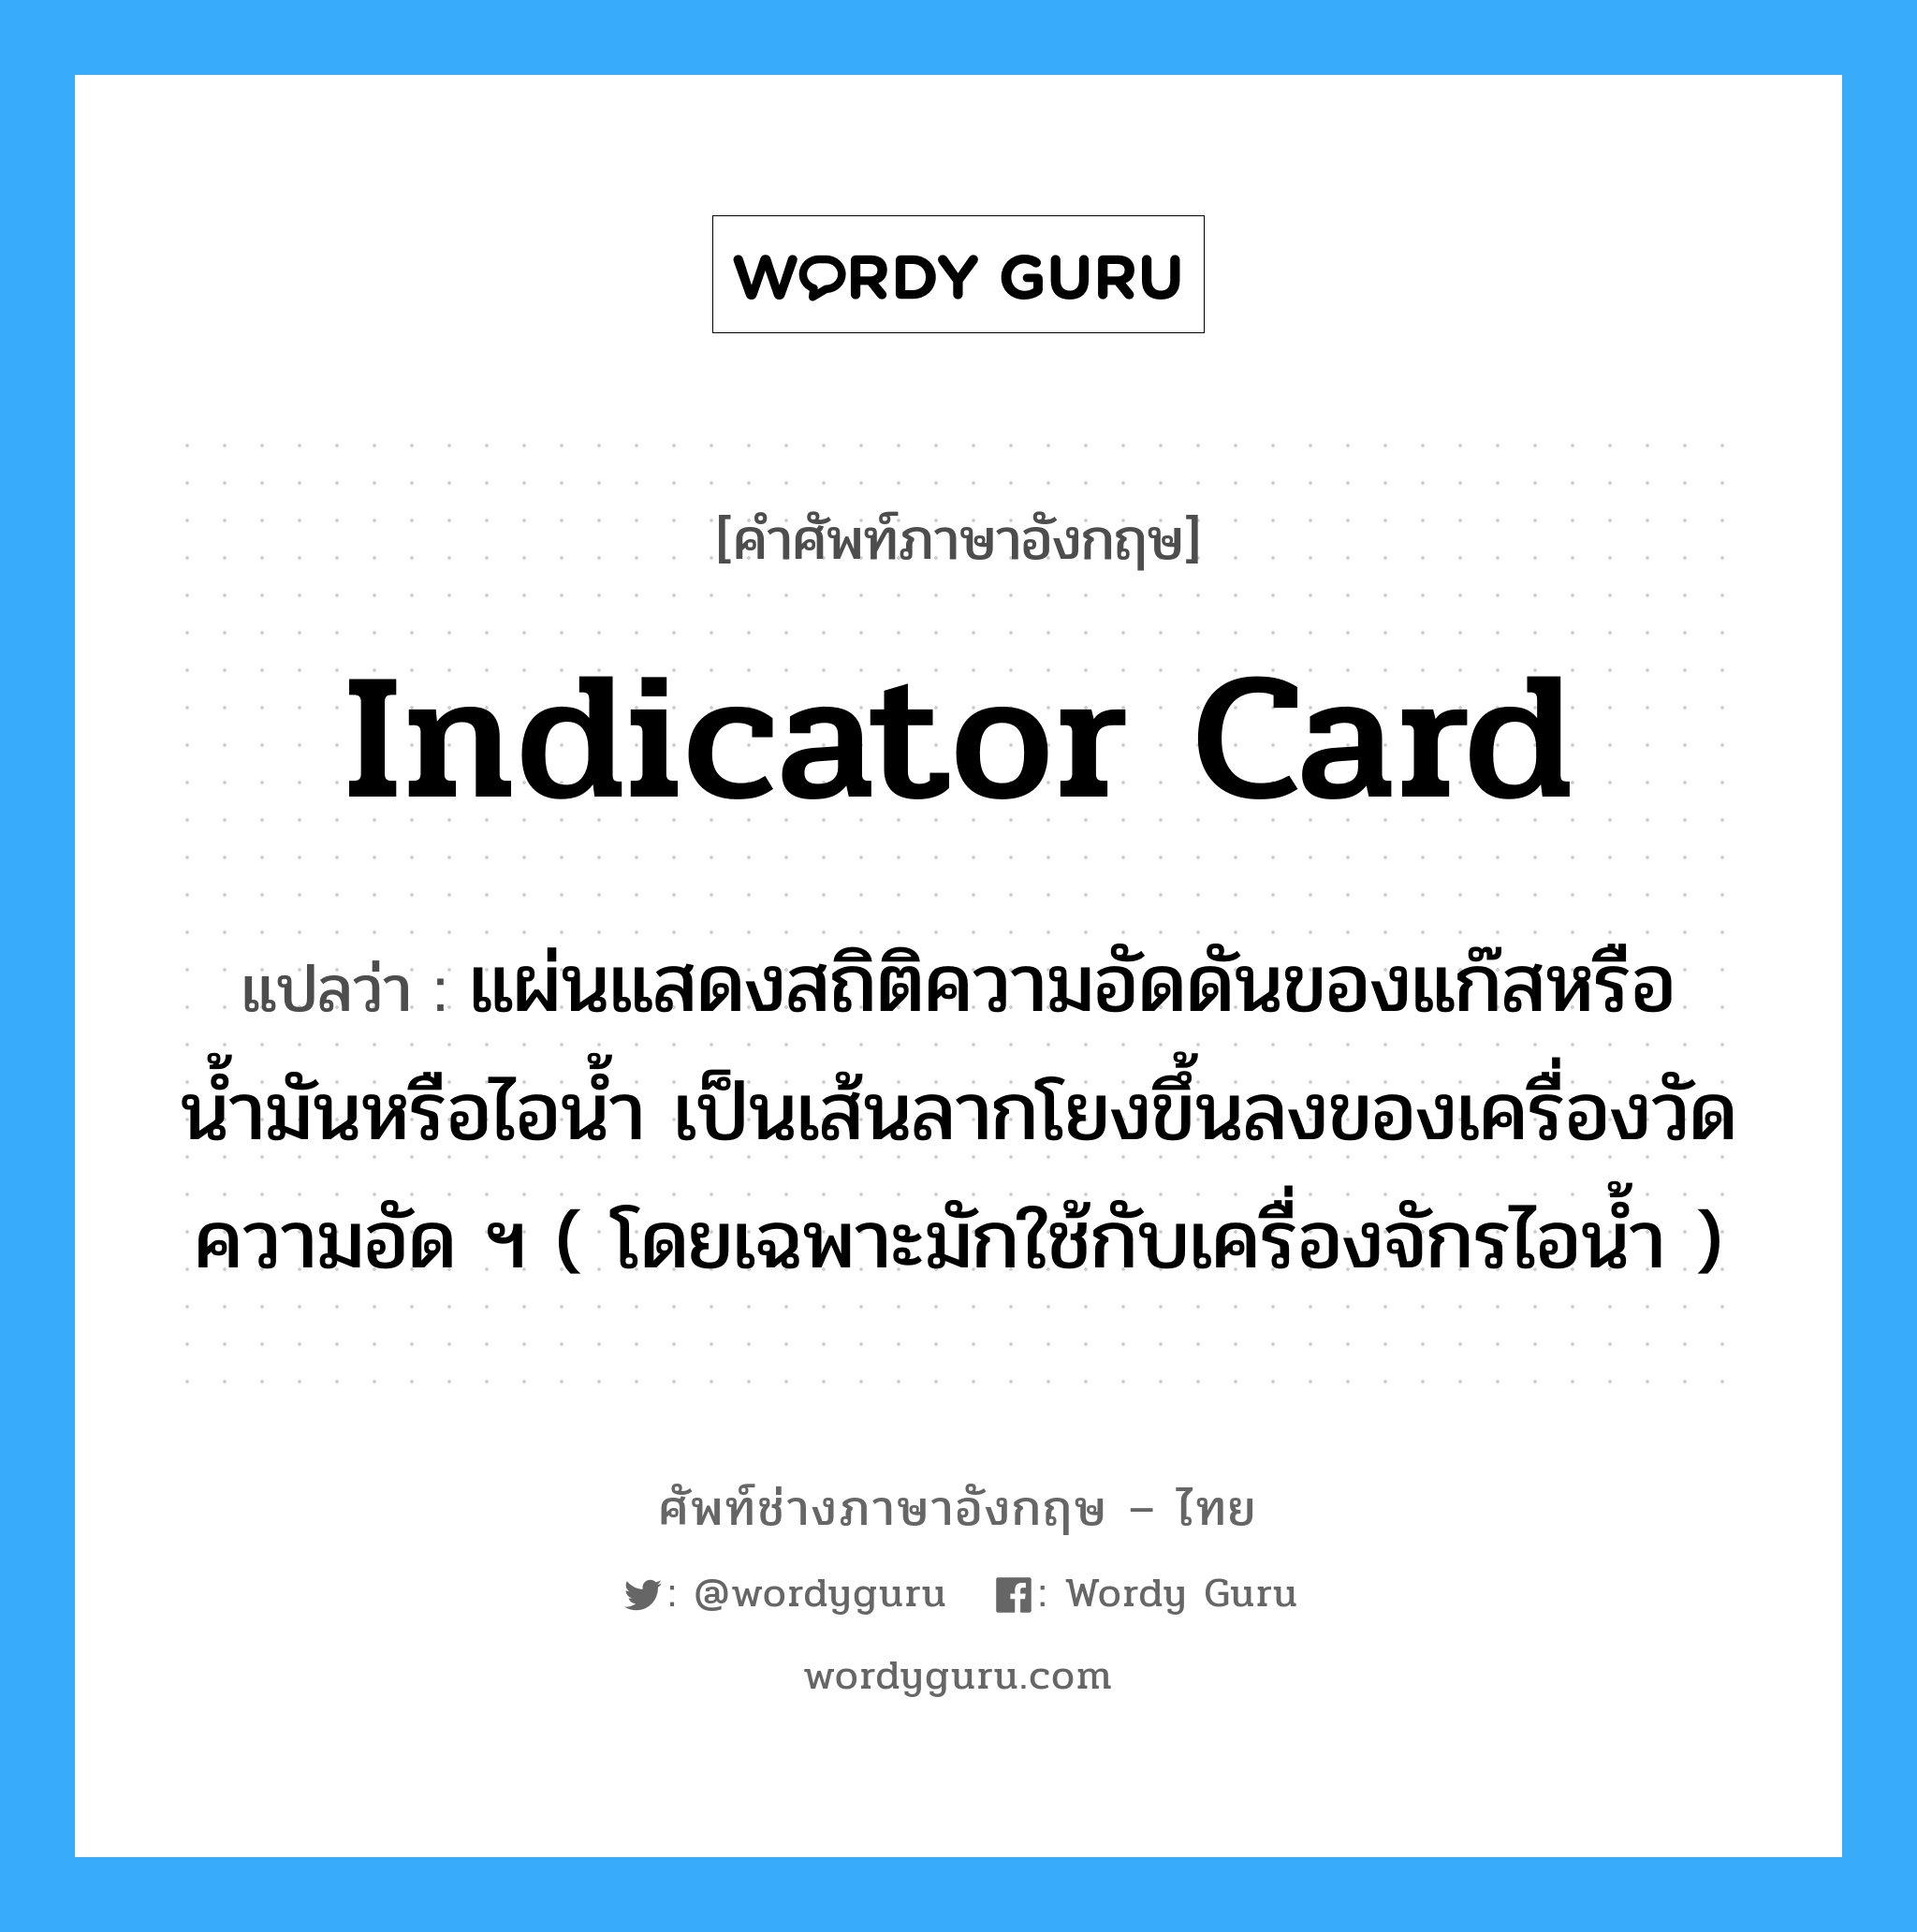 indicator card แปลว่า?, คำศัพท์ช่างภาษาอังกฤษ - ไทย indicator card คำศัพท์ภาษาอังกฤษ indicator card แปลว่า แผ่นแสดงสถิติความอัดดันของแก๊สหรือน้ำมันหรือไอน้ำ เป็นเส้นลากโยงขึ้นลงของเครื่องวัดความอัด ฯ ( โดยเฉพาะมักใช้กับเครื่องจักรไอน้ำ )